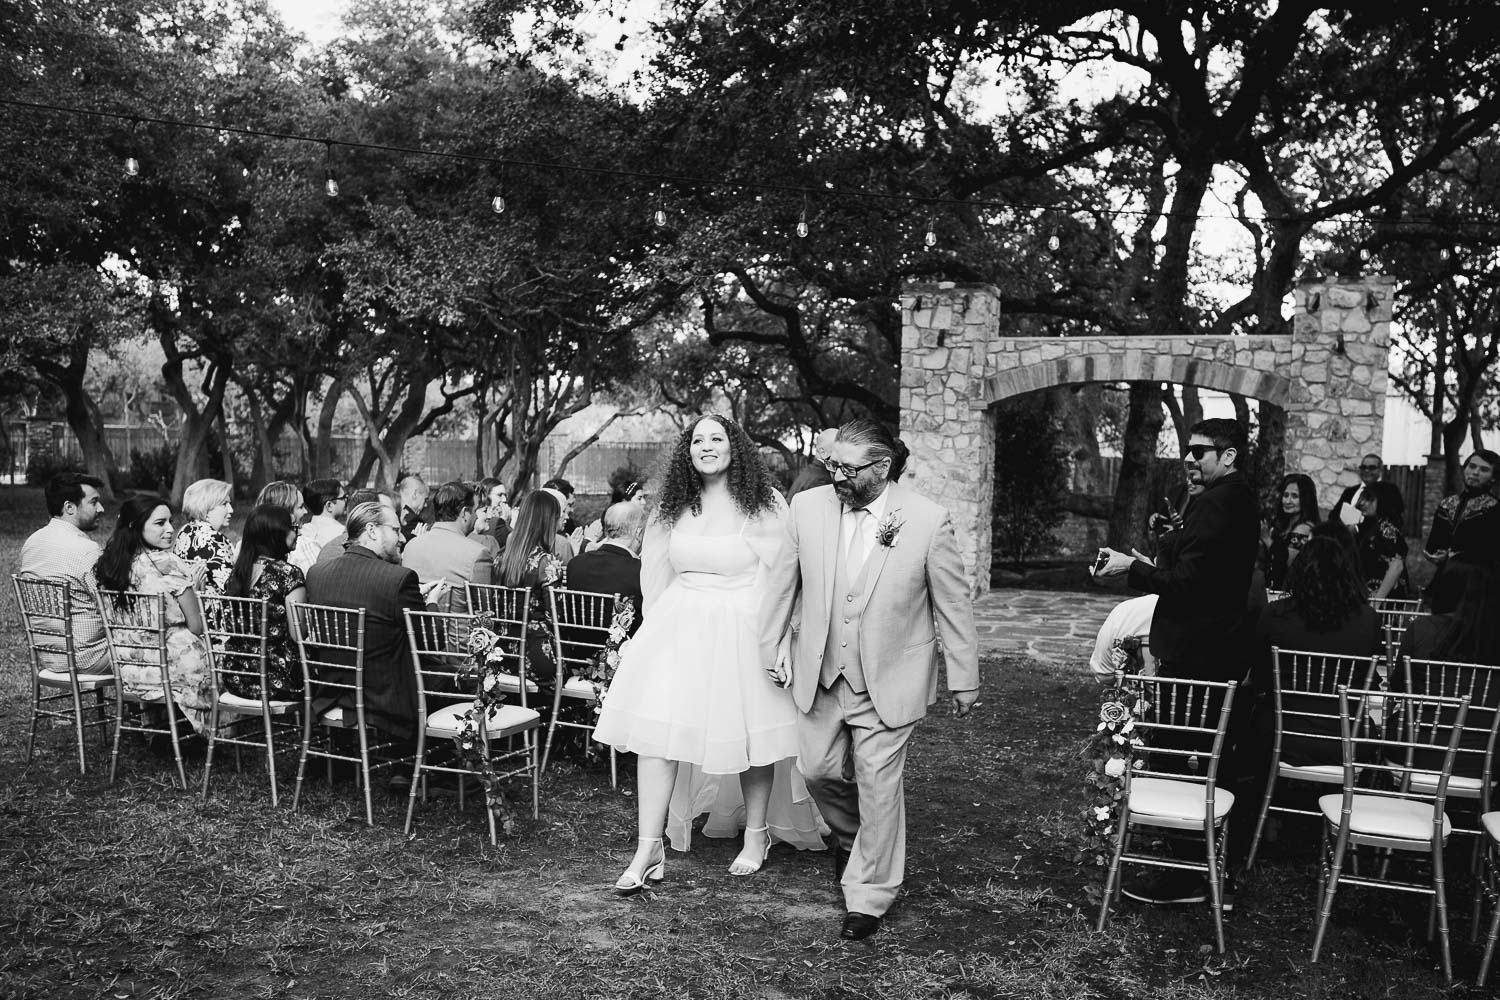 015 The Veranda Wedding + Reception in San Antonio Texas Philip Thomas Photography